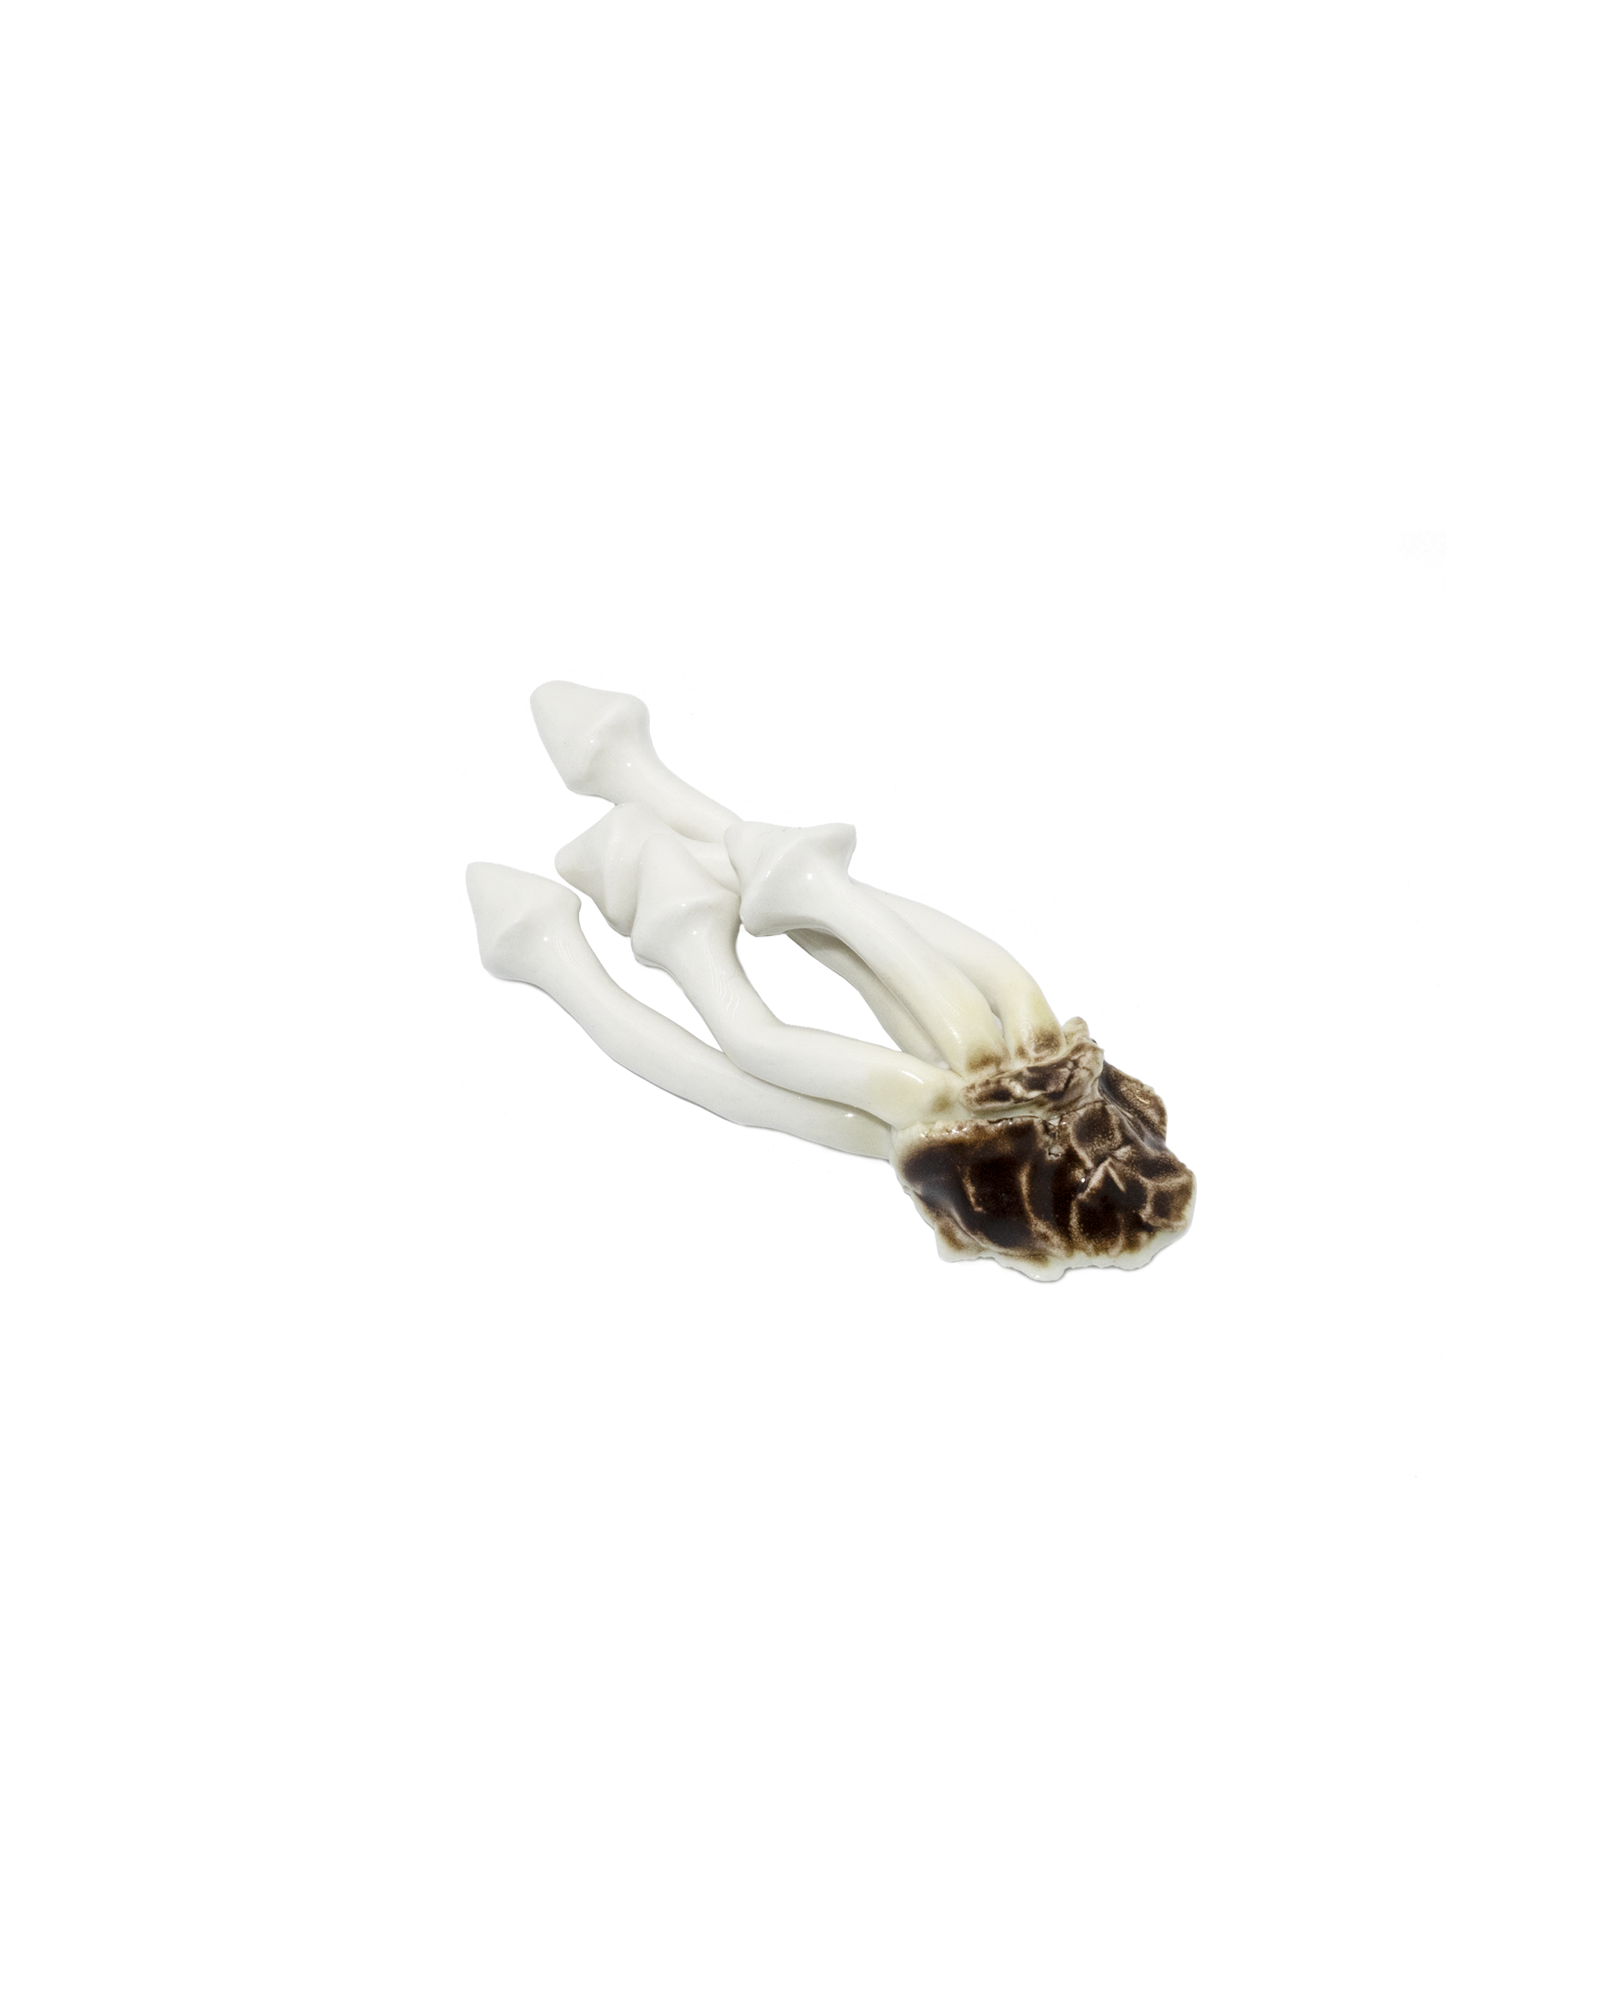 White Oyster Mushroom Magnet